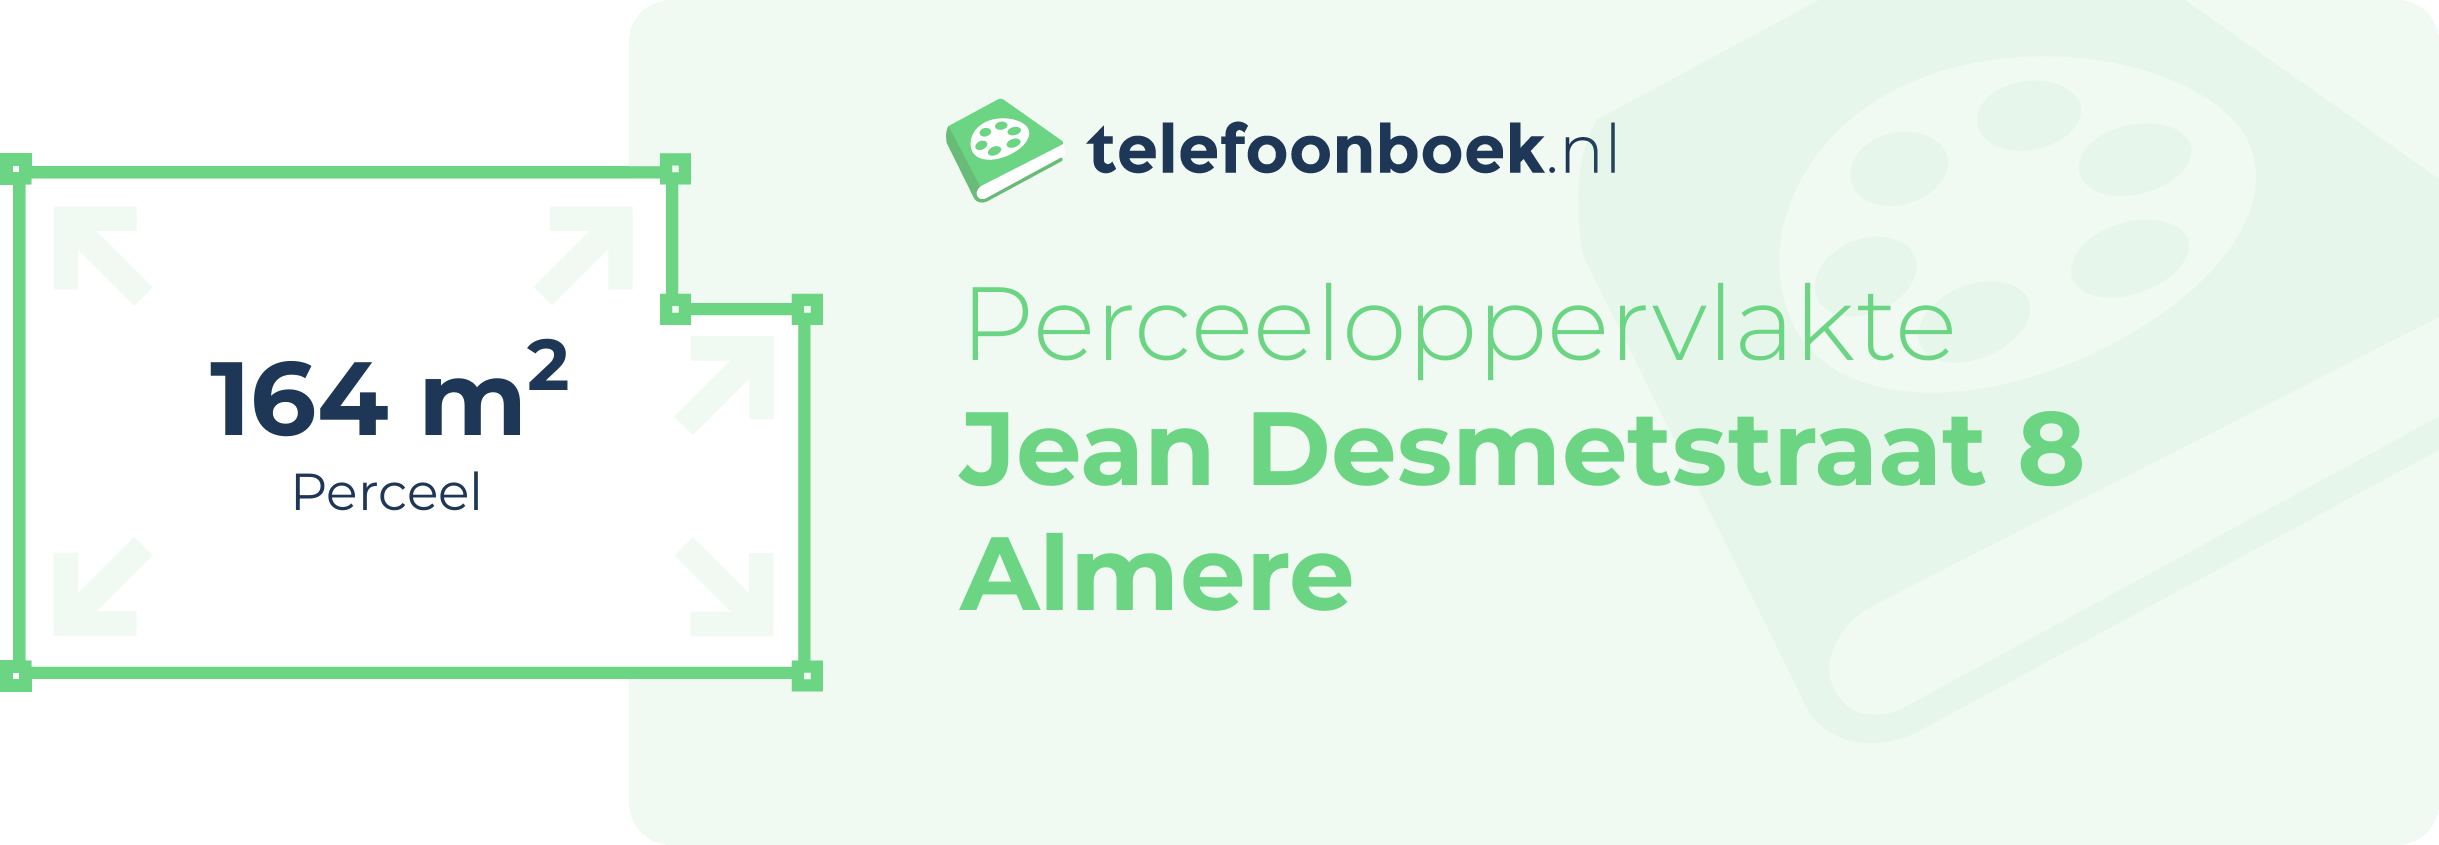 Perceeloppervlakte Jean Desmetstraat 8 Almere